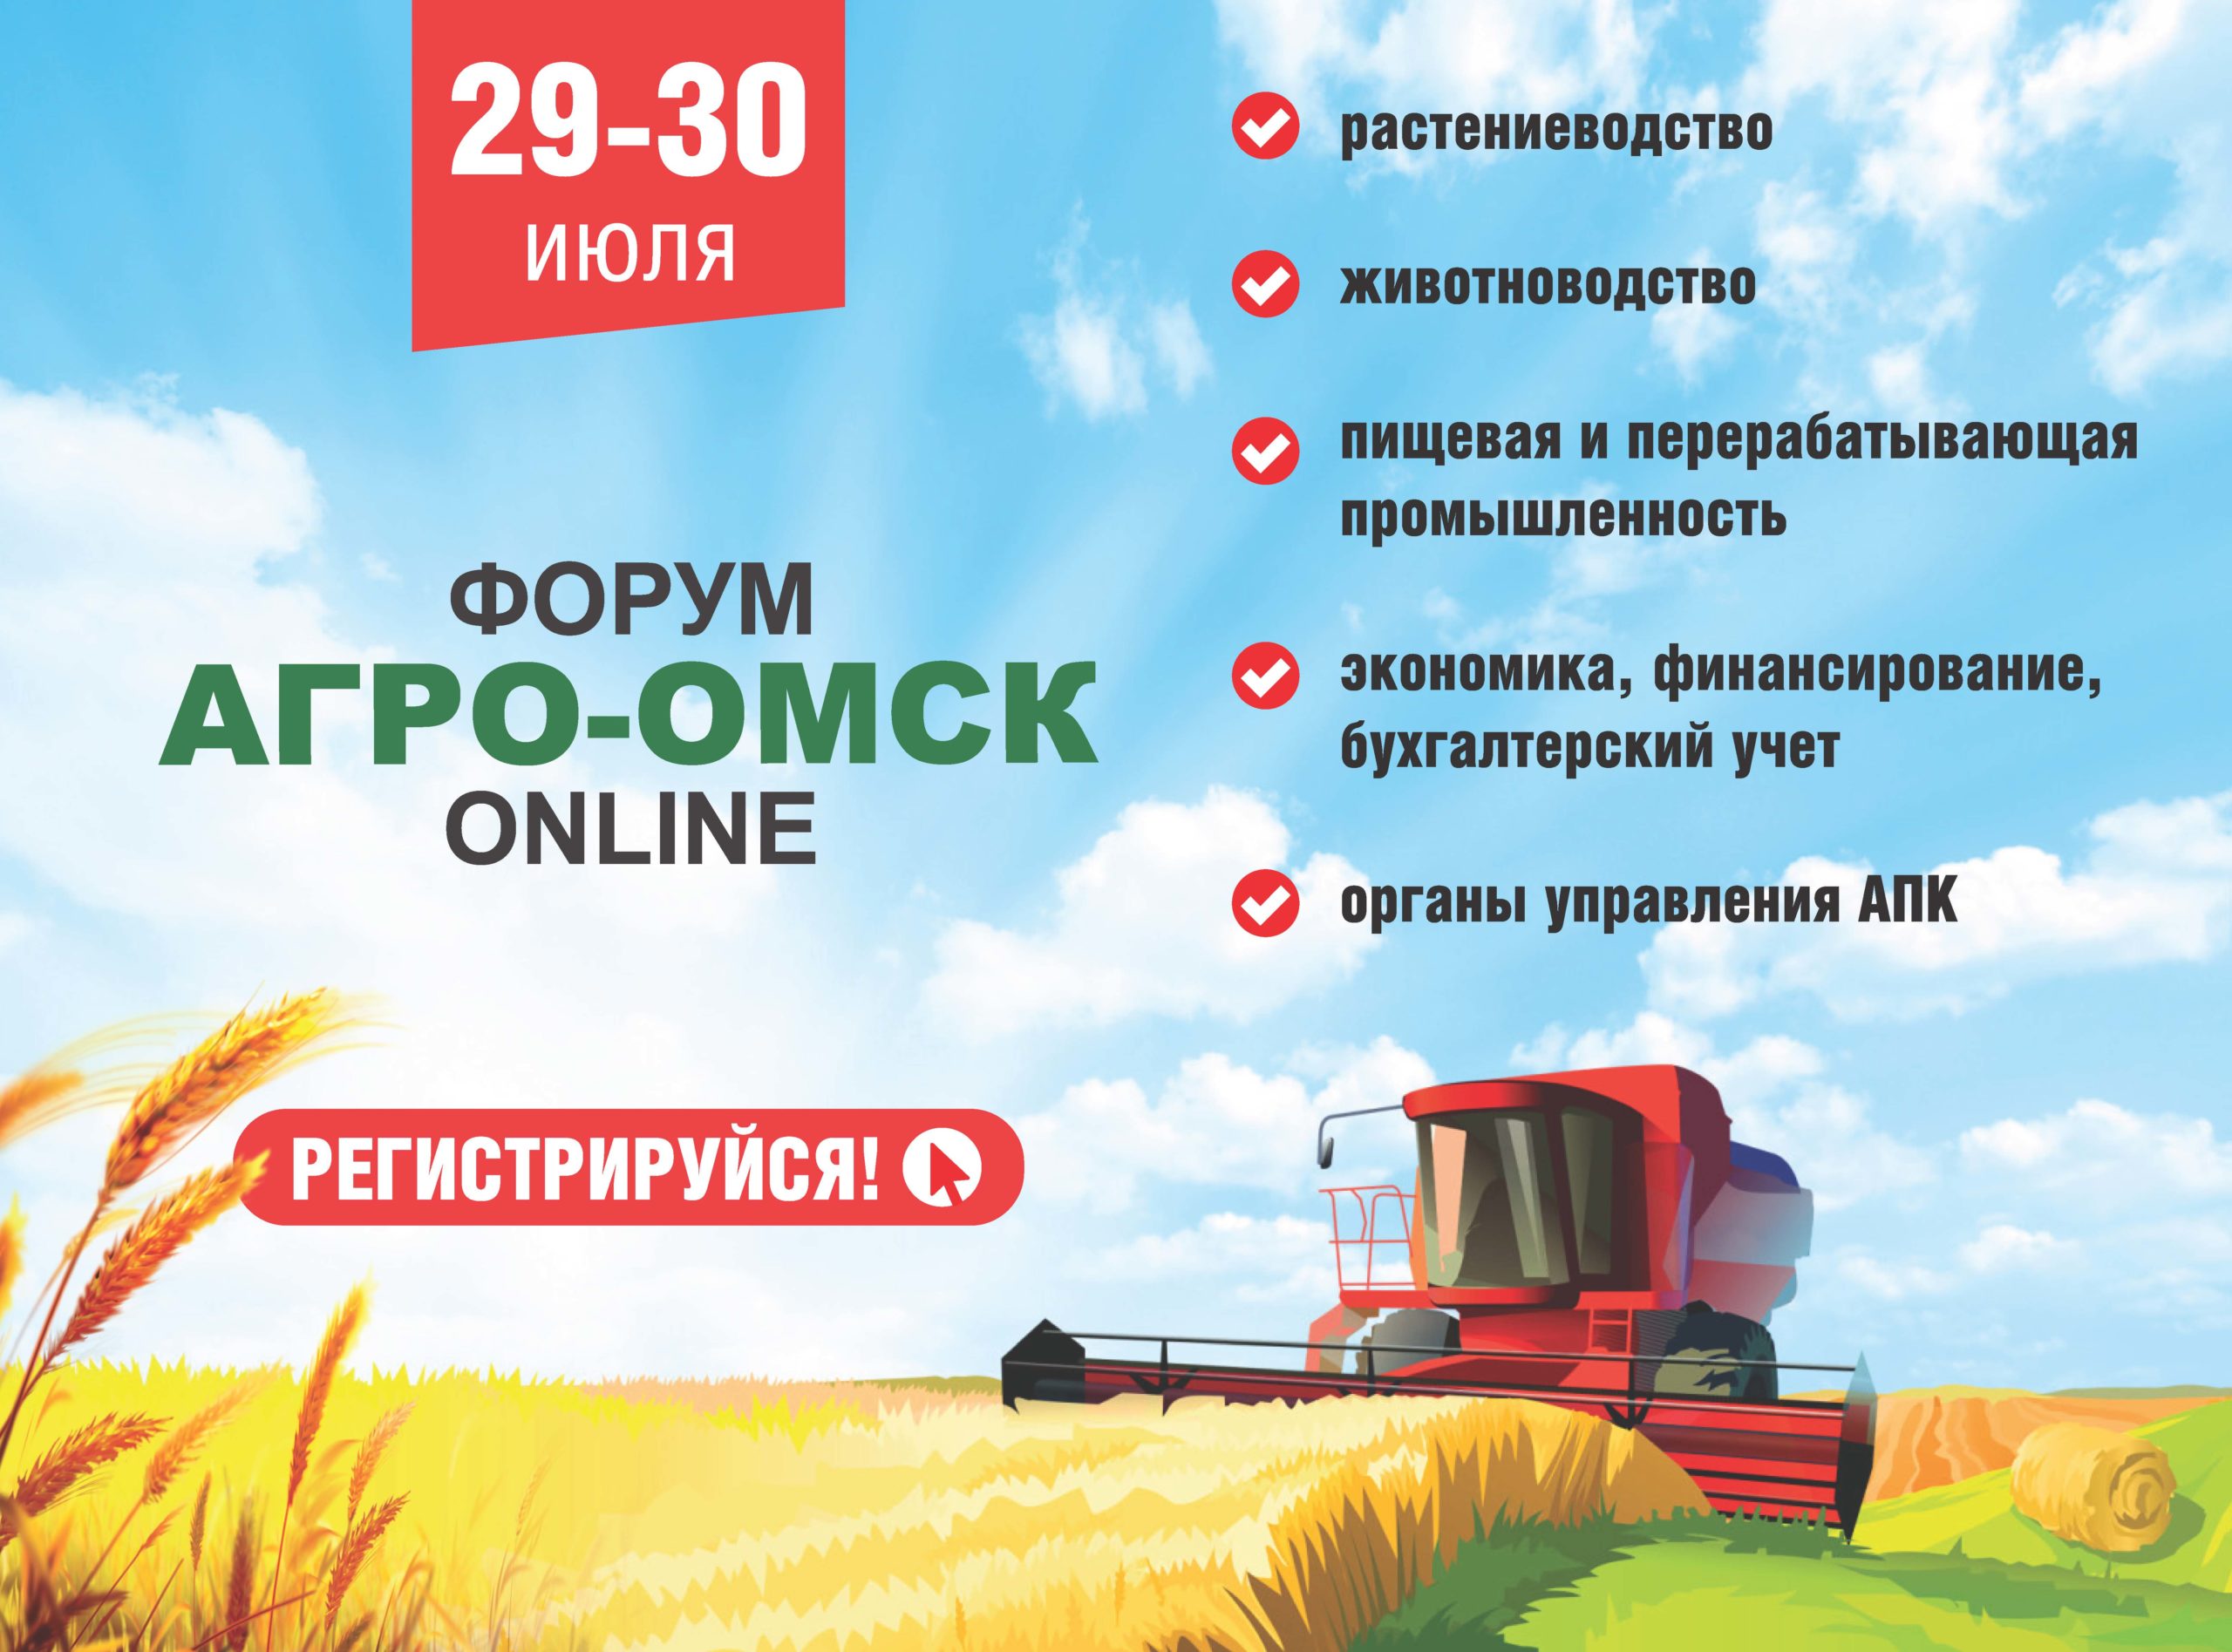 Аграрный форум «АгроОмск-2021» состоится в online-формате